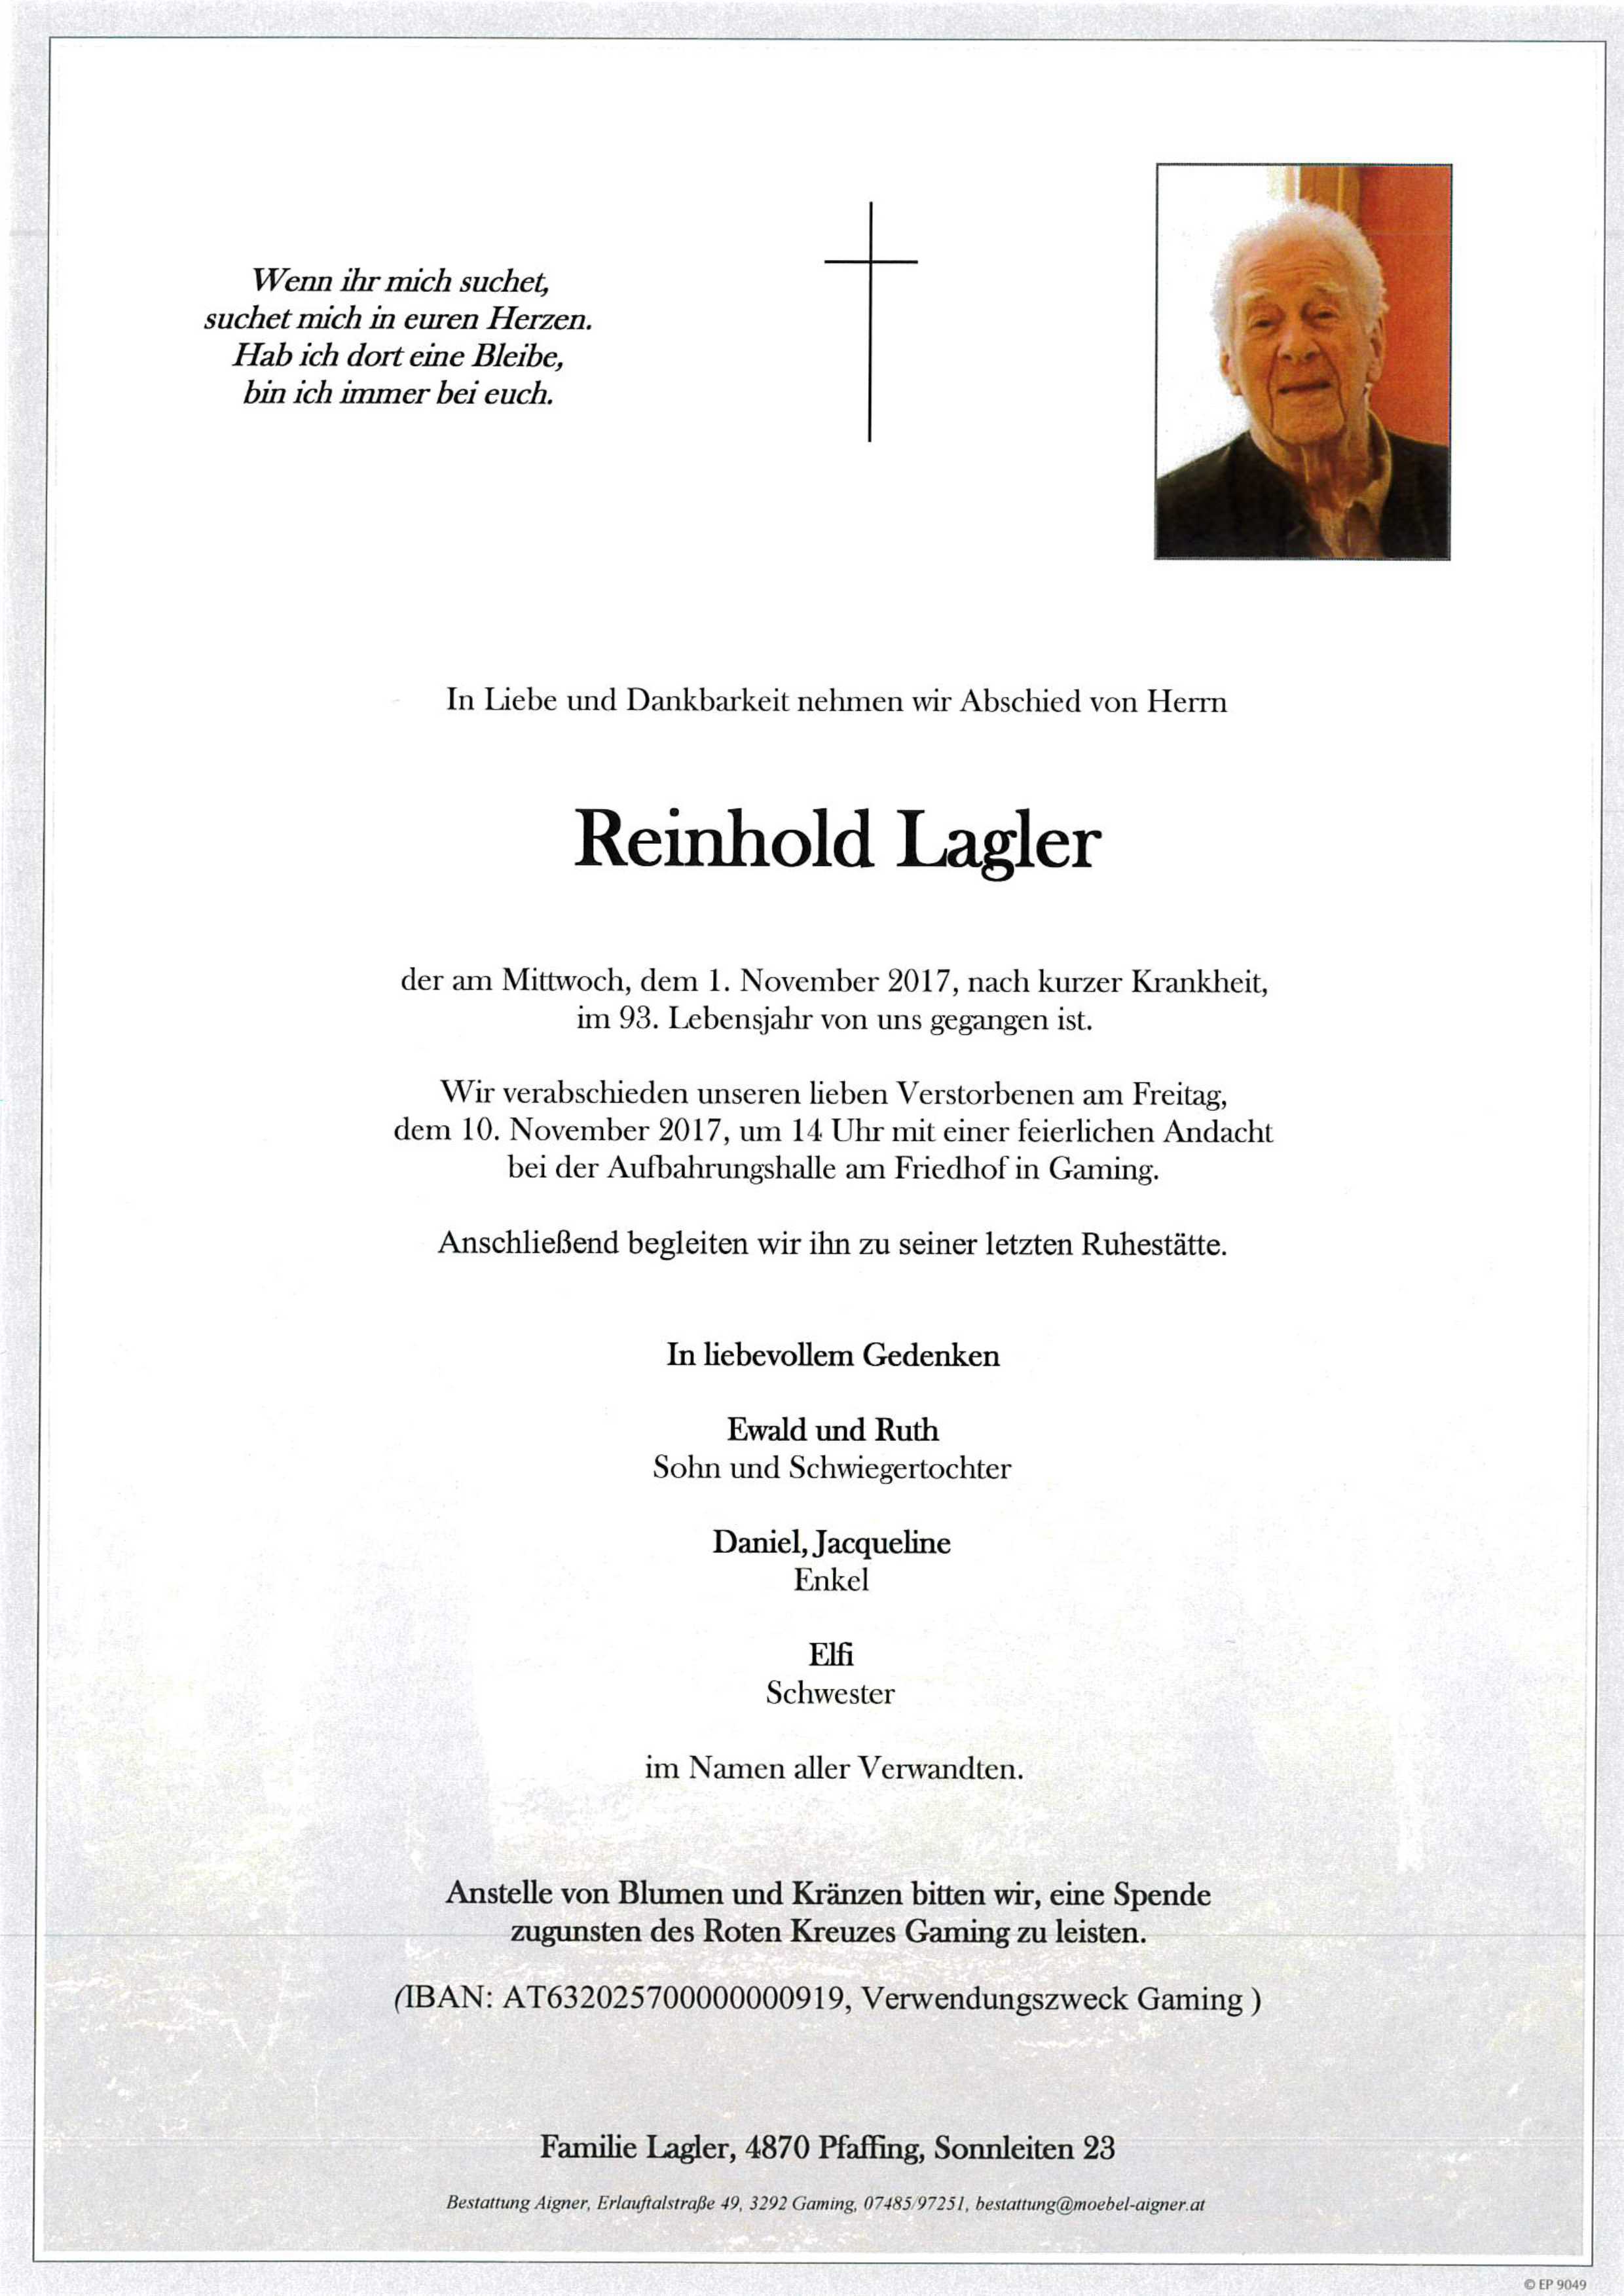 Reinhold Lagler